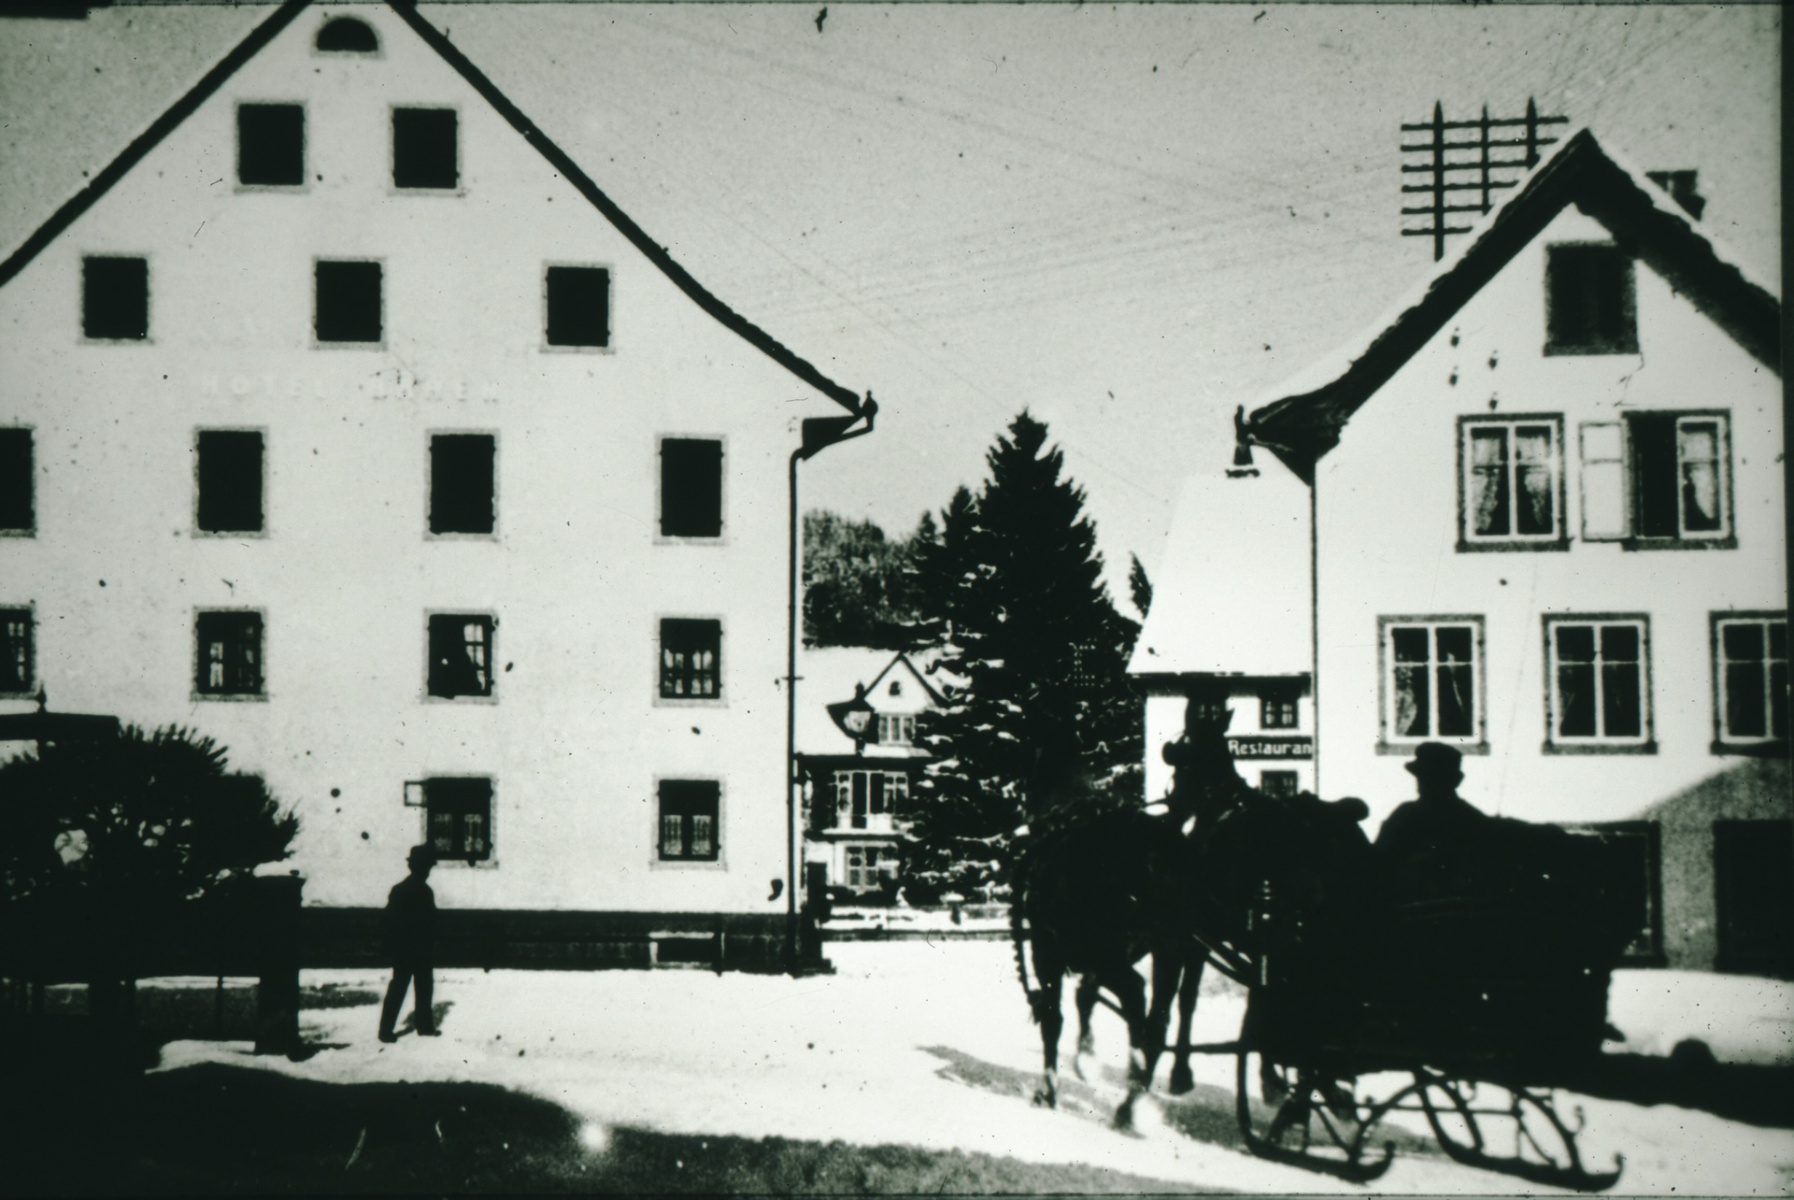 Dorfplatz im Winter, lk Hotel Bären, erbaut 1834/35 durch Wirt und GdePräsi Wolfensberger, Abbruch 1970